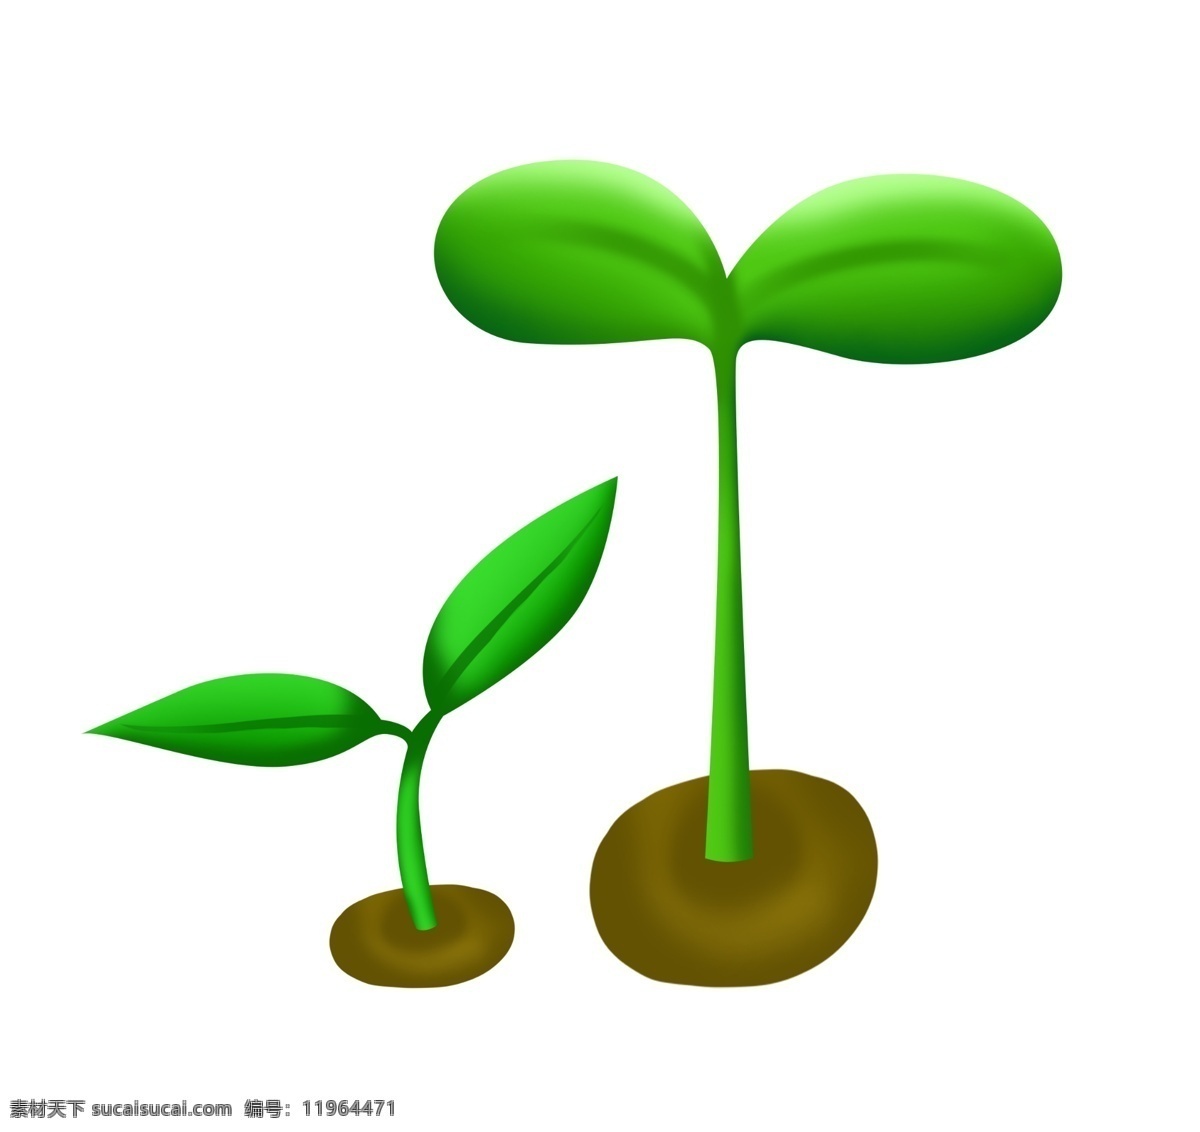 小树苗 树苗 绿色树苗 土堆 生长的树苗 树 小树 小苗 绿色植物